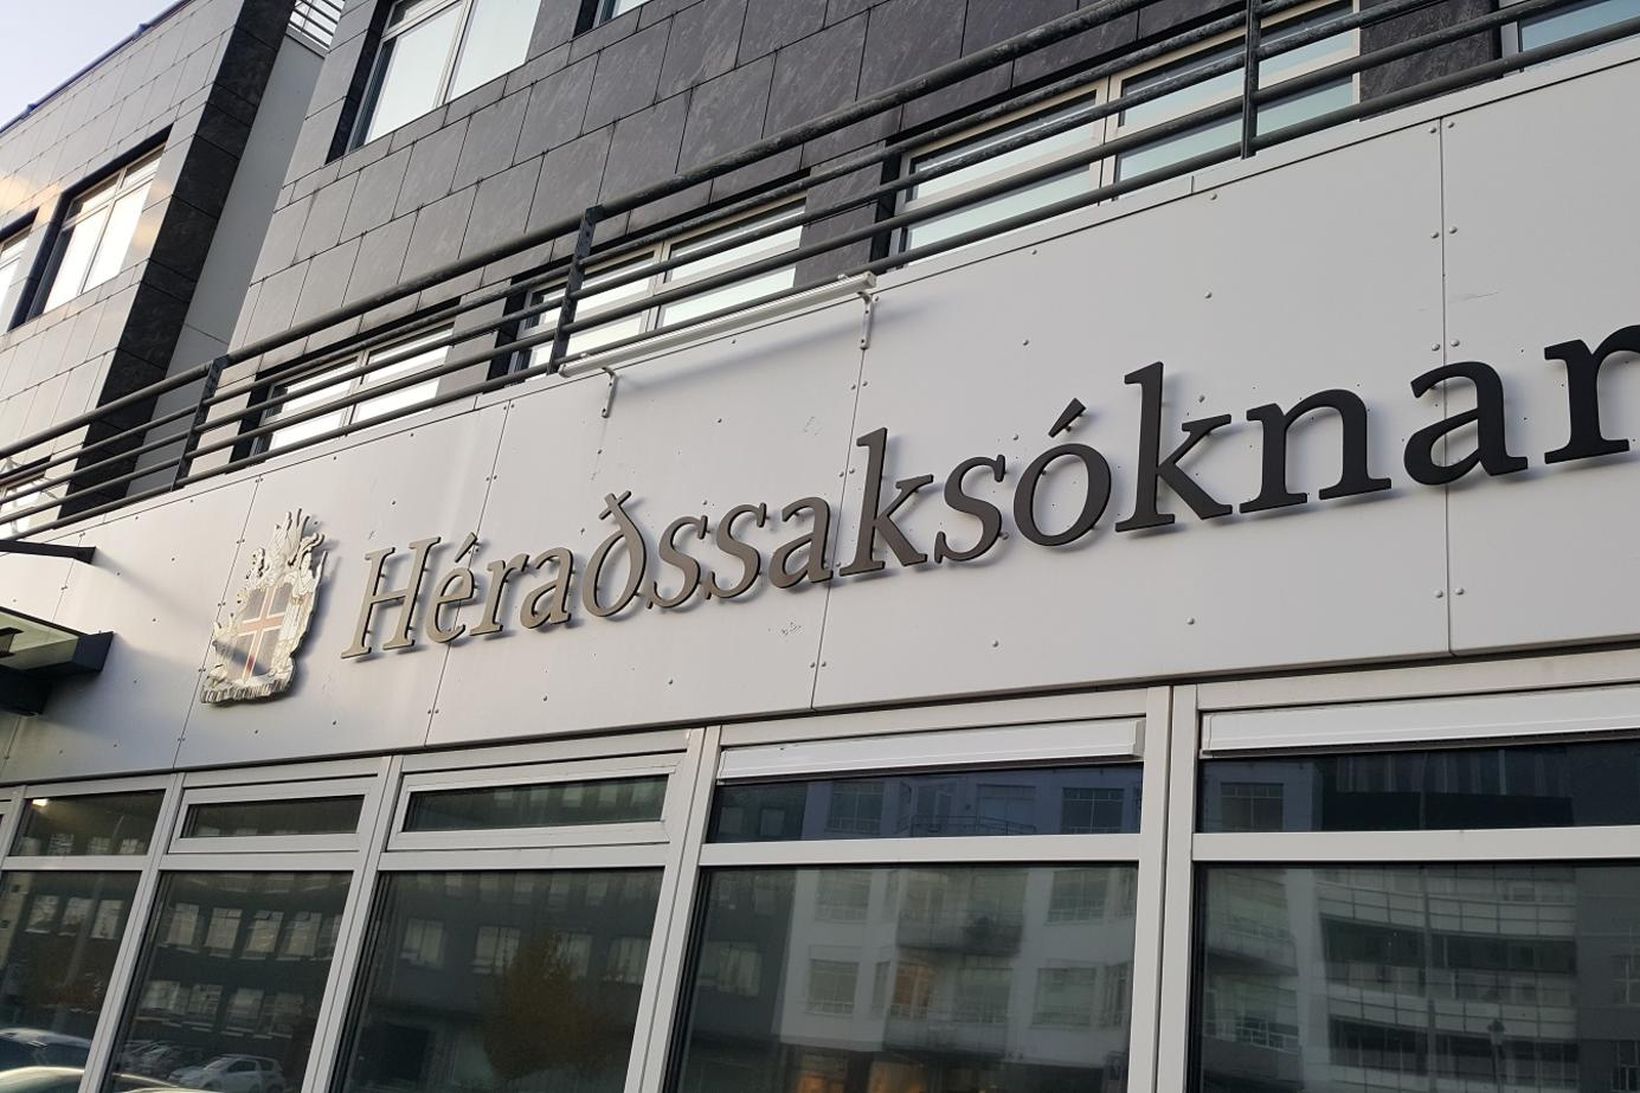 Héraðssaksóknari.